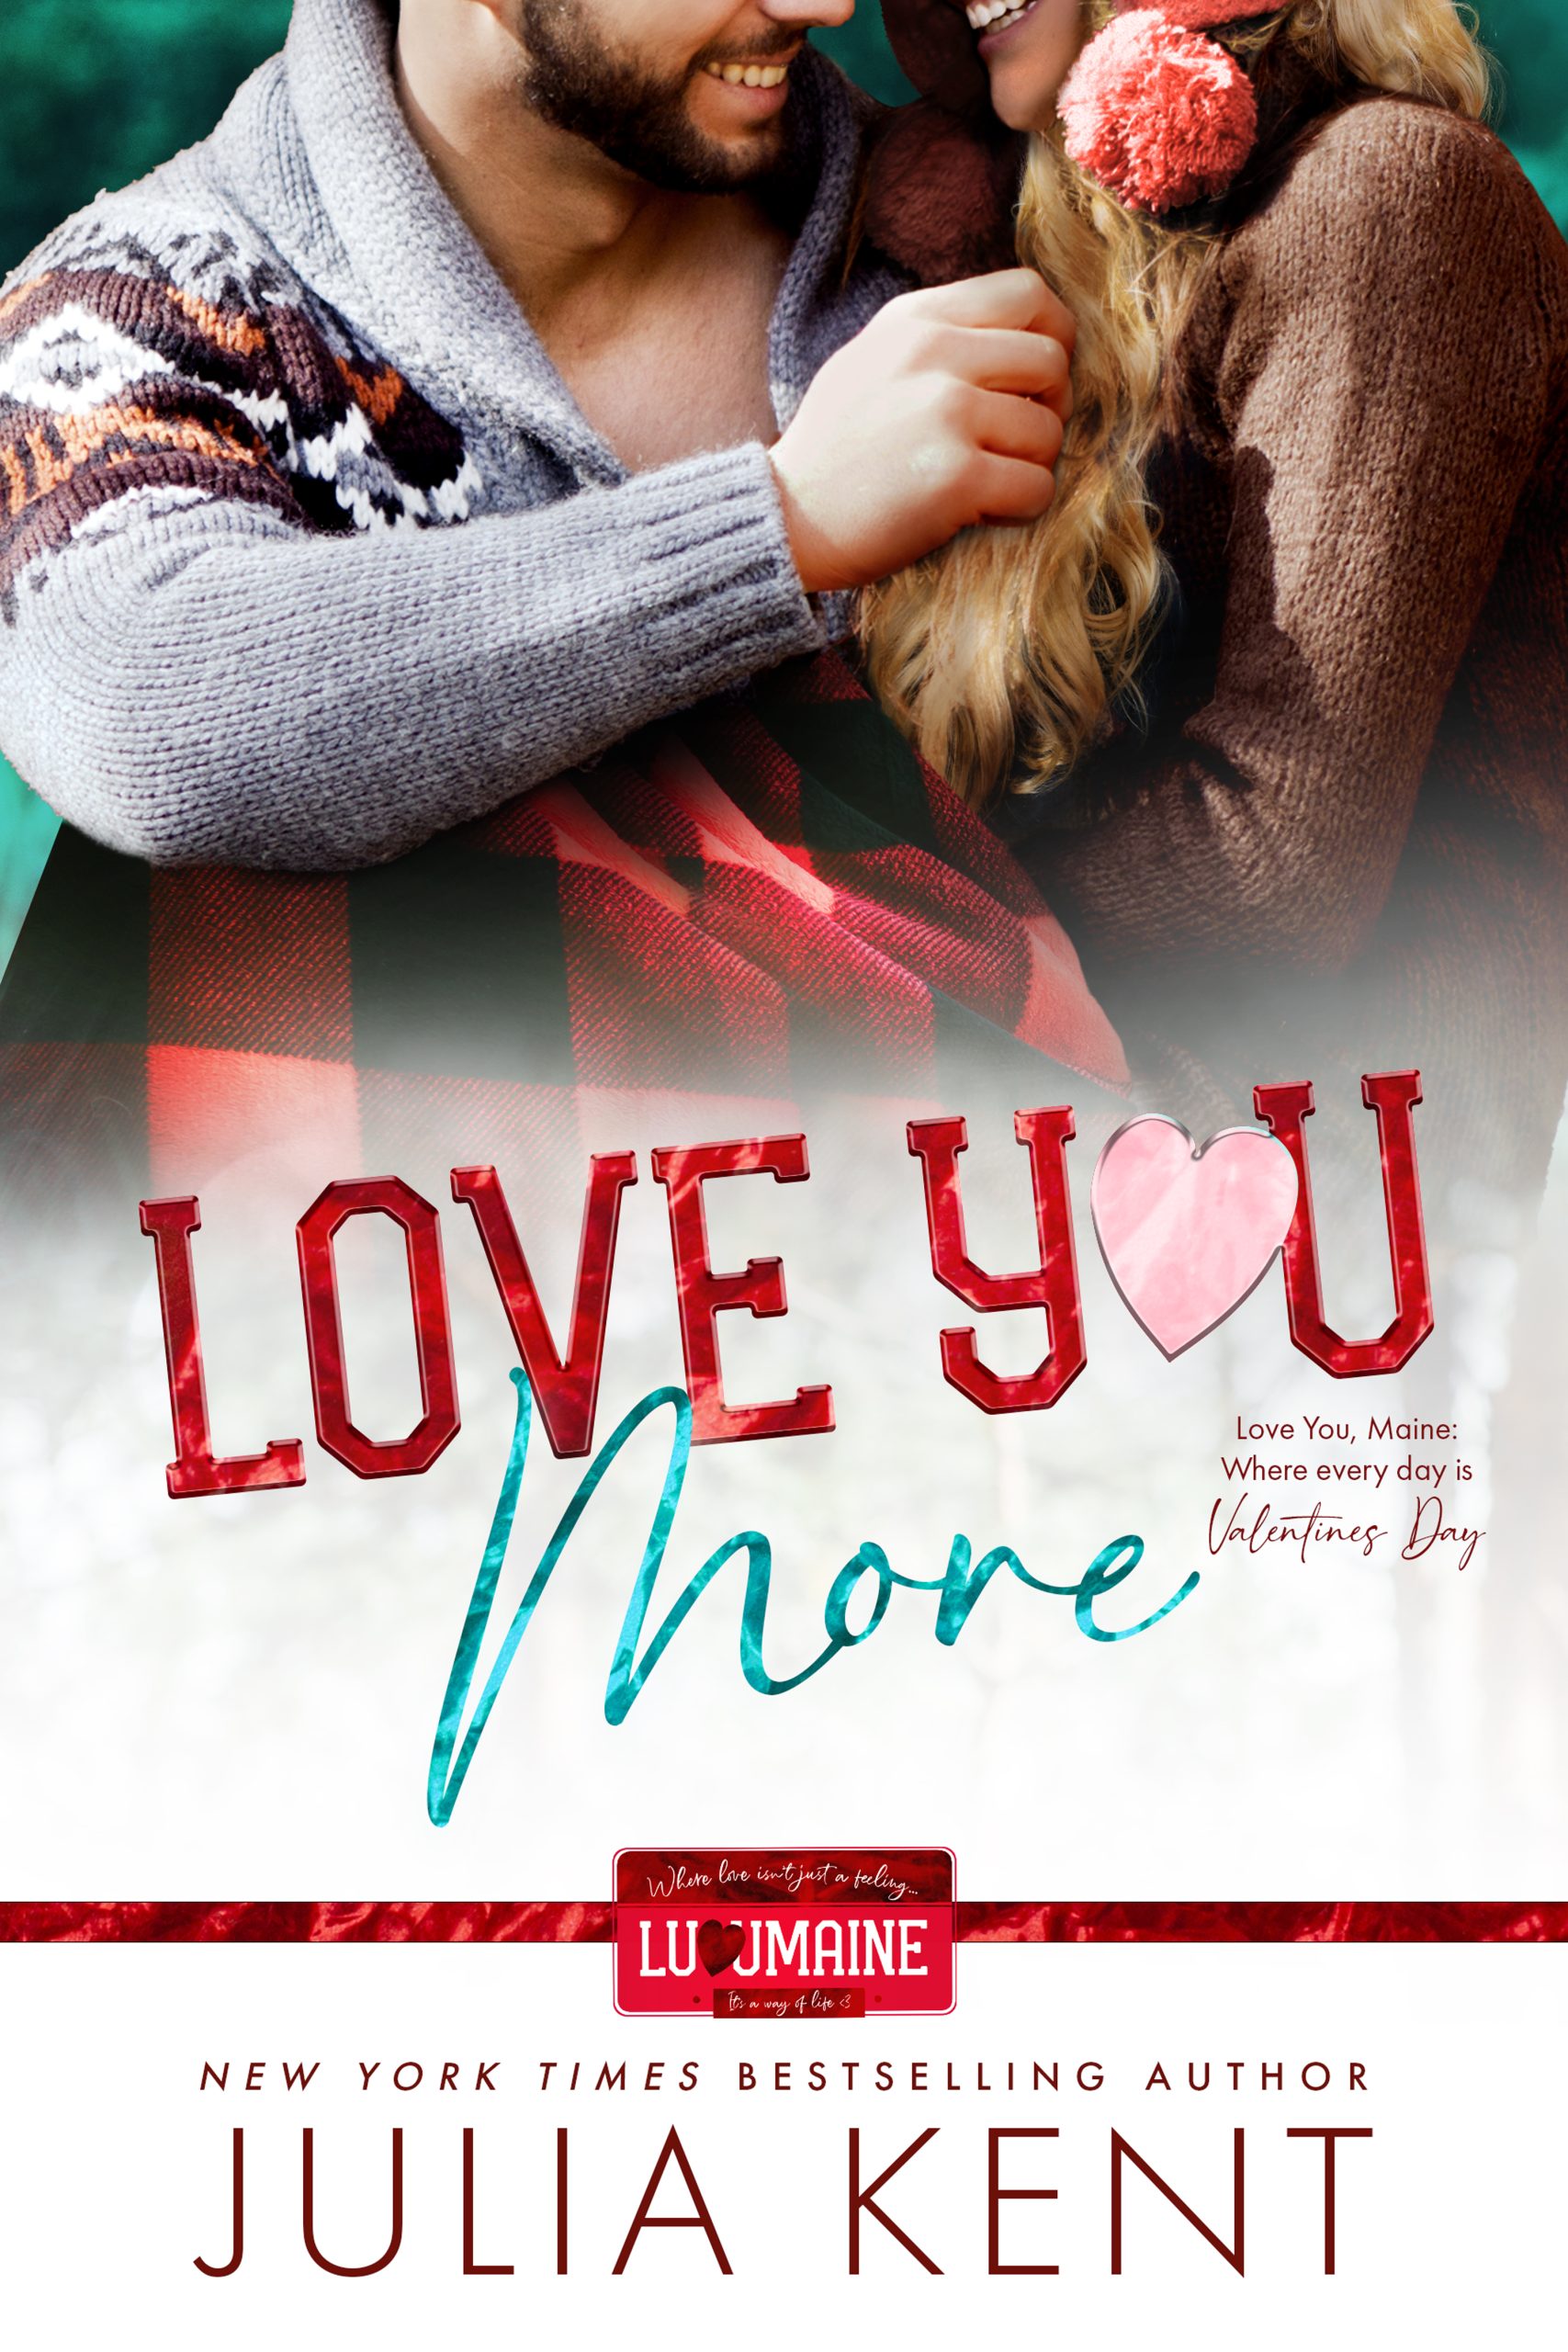 Love You More by Julia Kent PDF Download